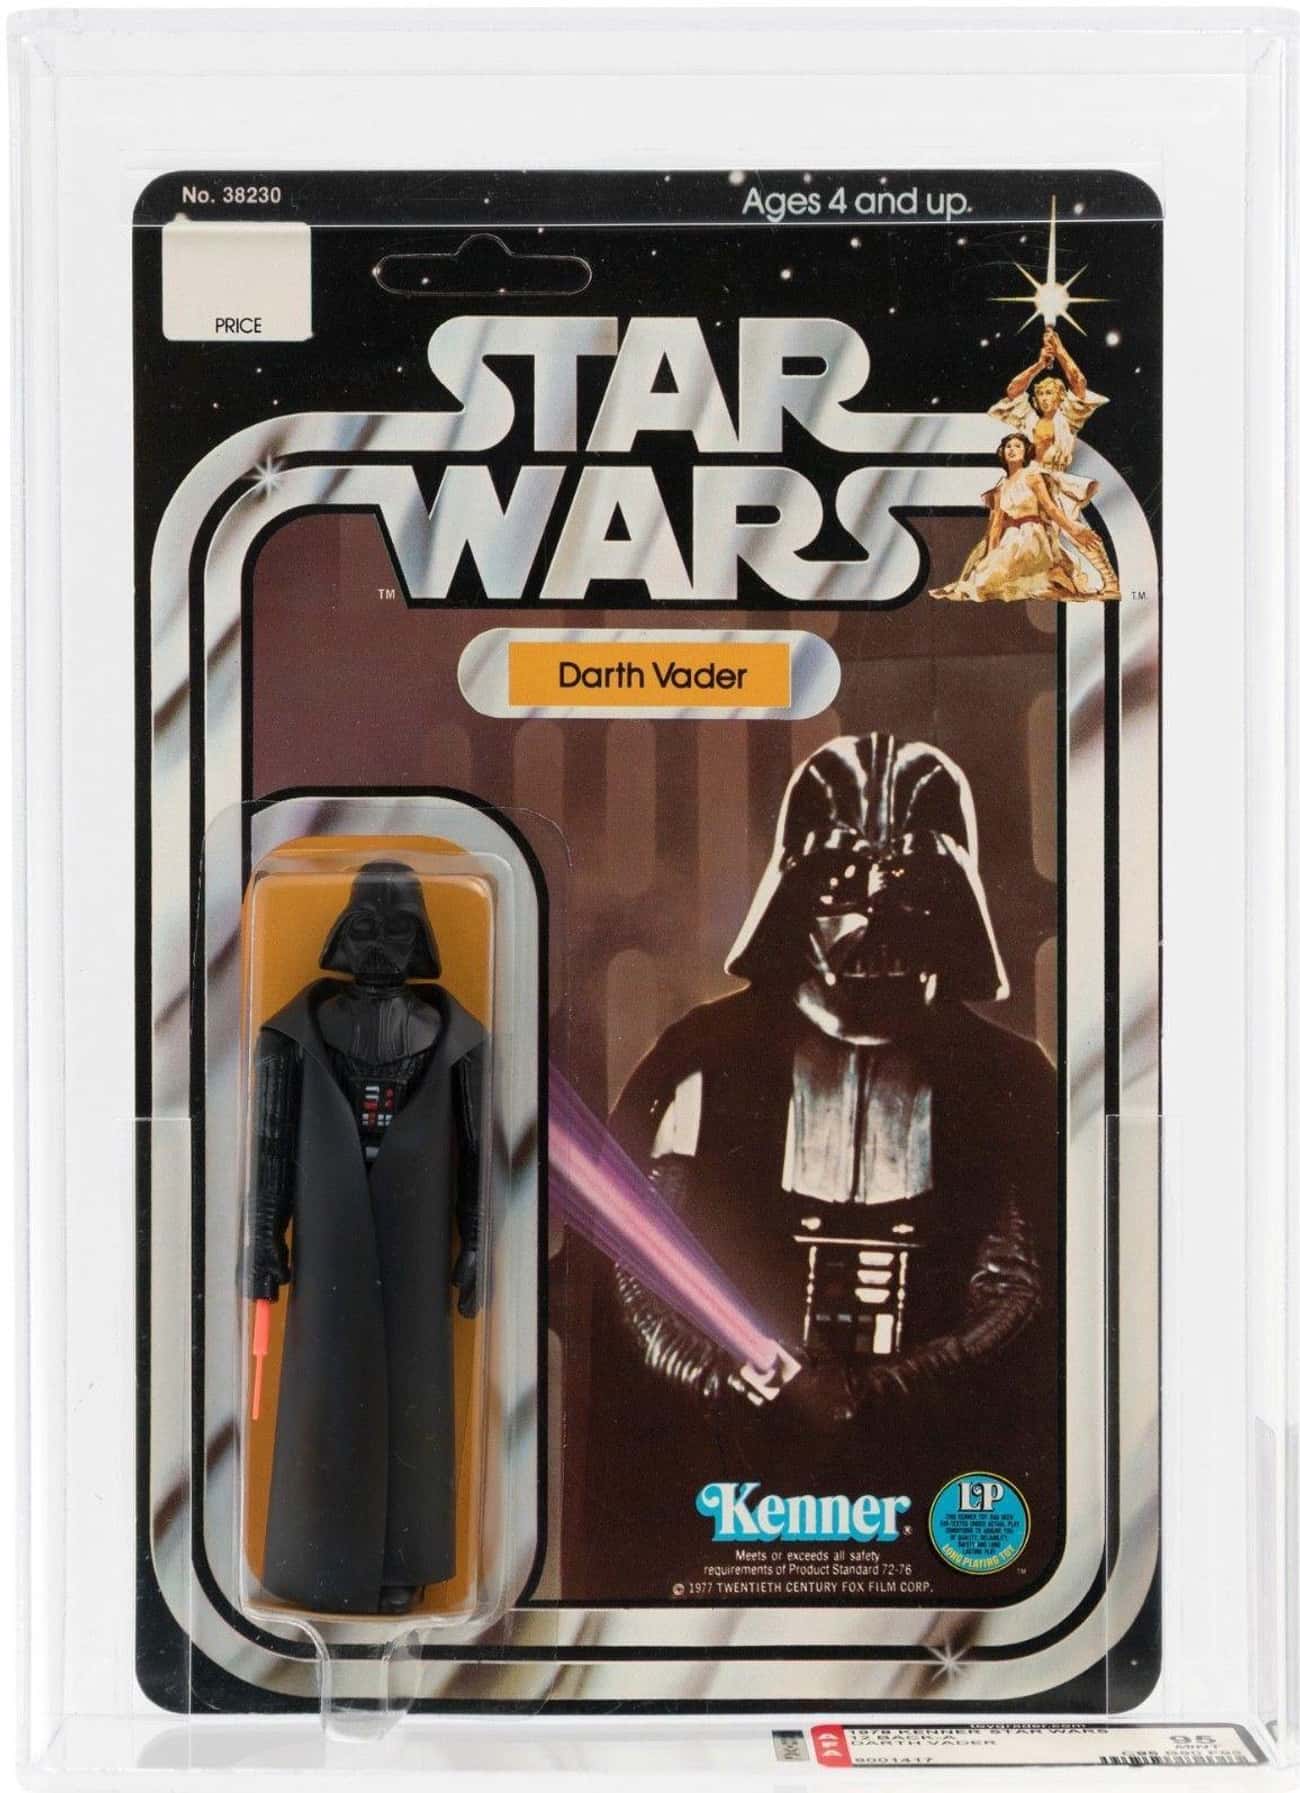 Darth Vader - $45,000